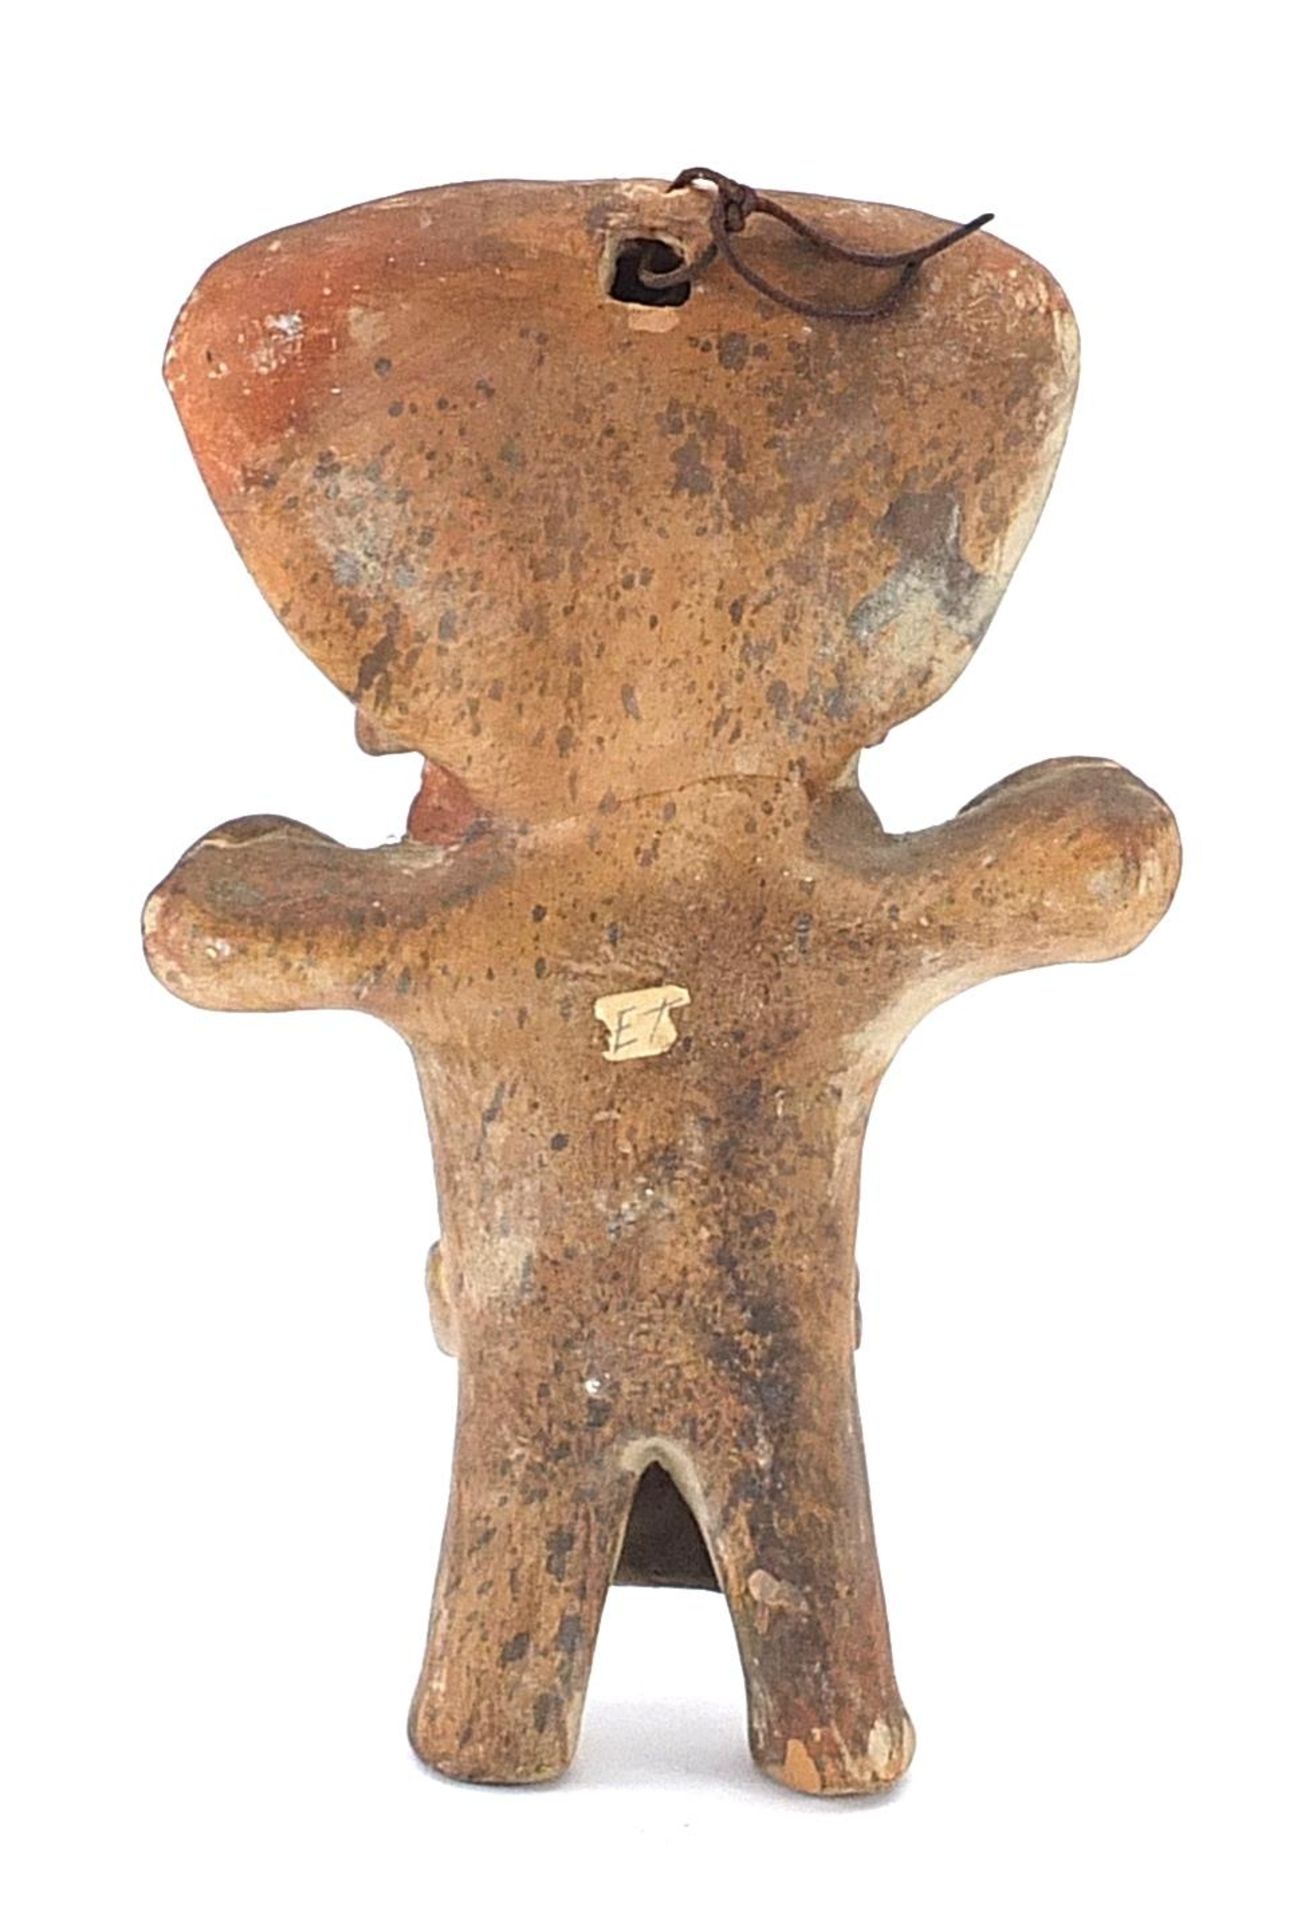 Peruvian terracotta figure, 22.5cm high - Image 2 of 3